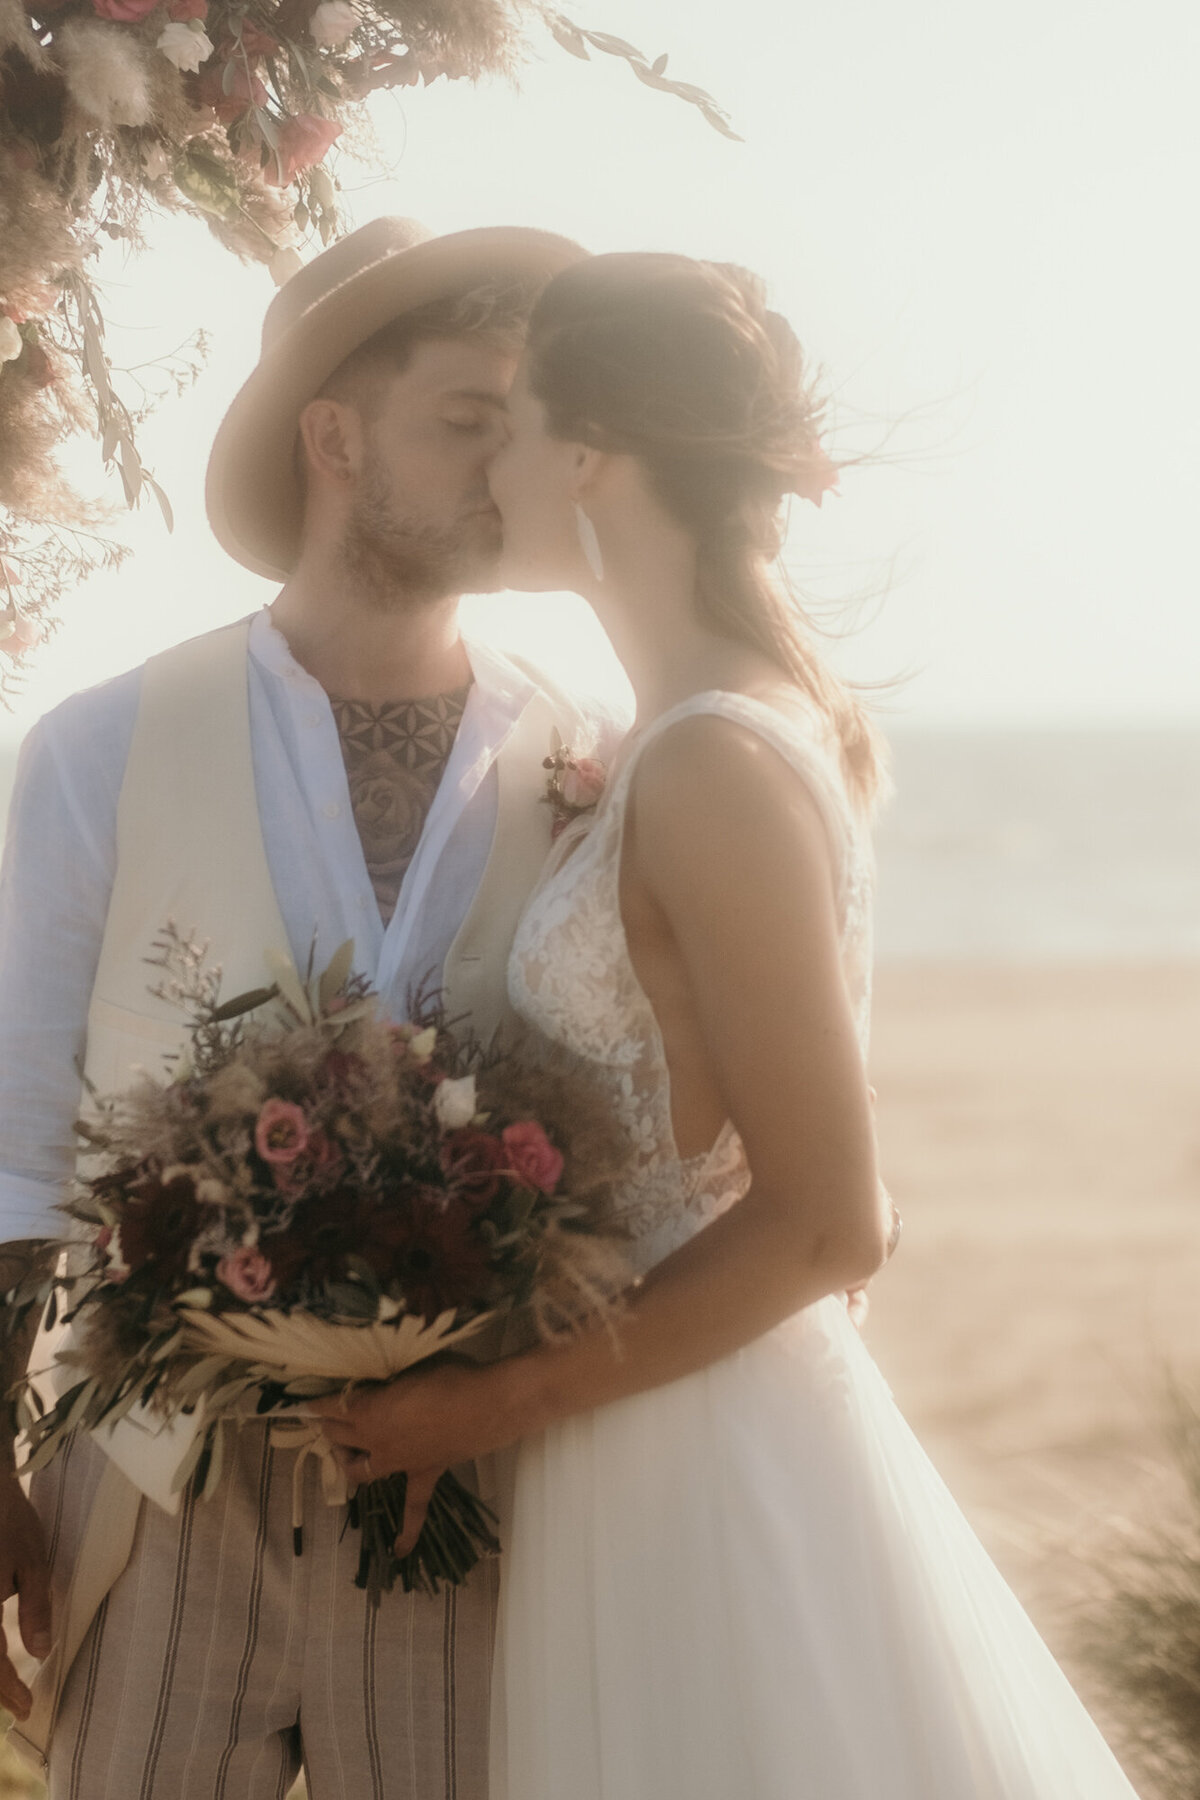 Das Hochzeitspaar küsst sich liebevoll. Im Hintergrund sieht man den Strand und das Meer.